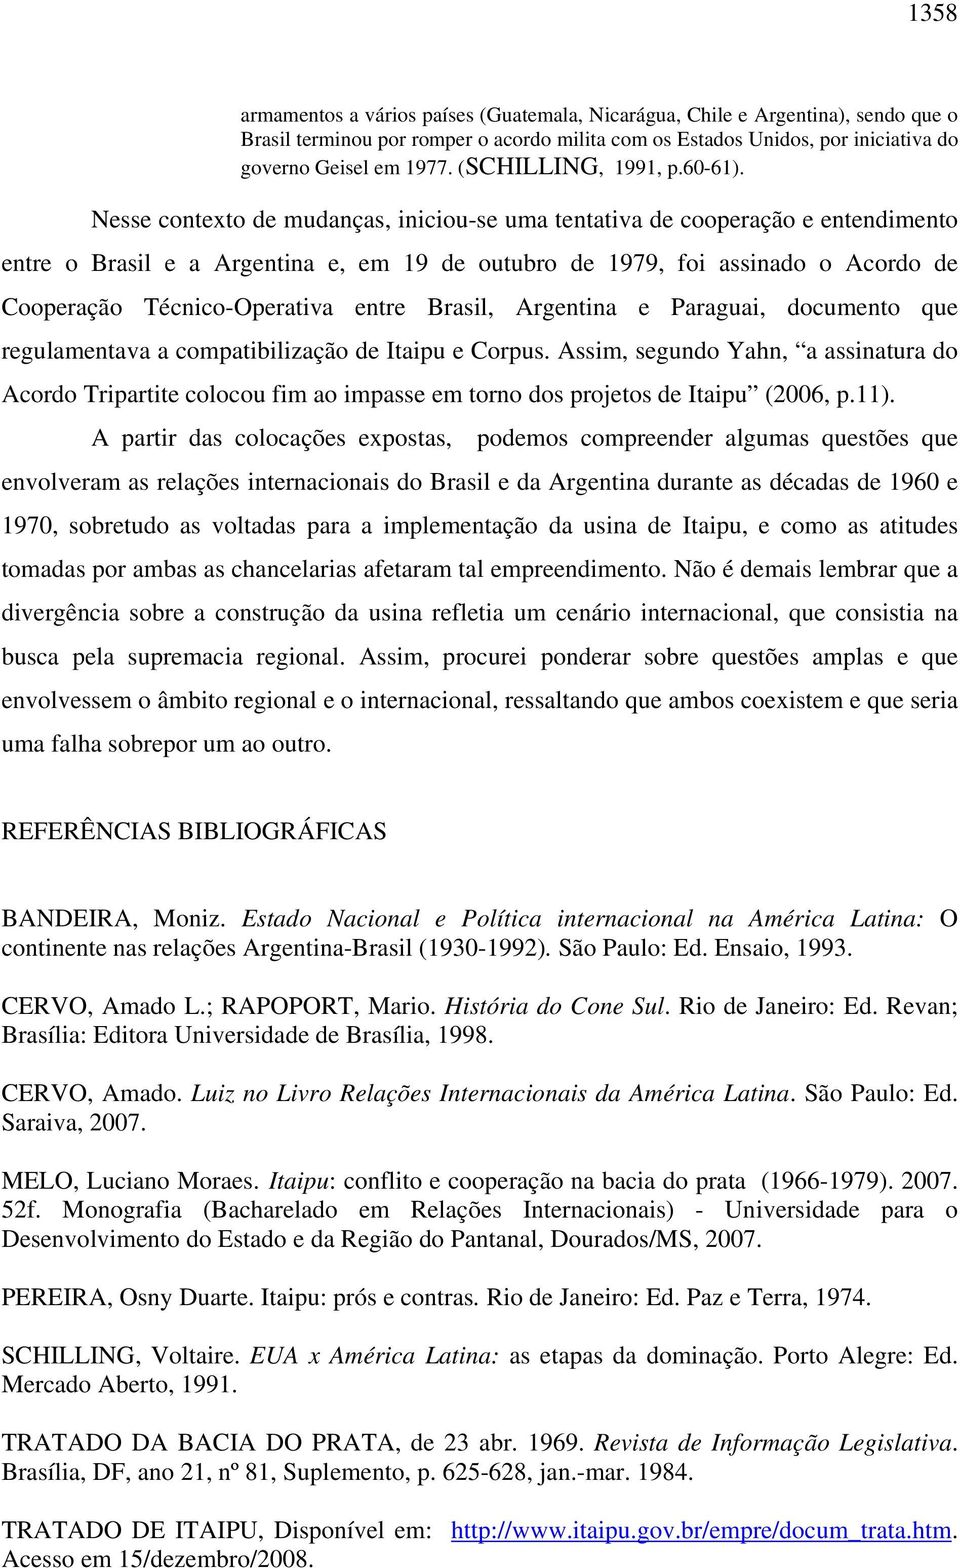 Nesse contexto de mudanças, iniciou-se uma tentativa de cooperação e entendimento entre o Brasil e a Argentina e, em 19 de outubro de 1979, foi assinado o Acordo de Cooperação Técnico-Operativa entre